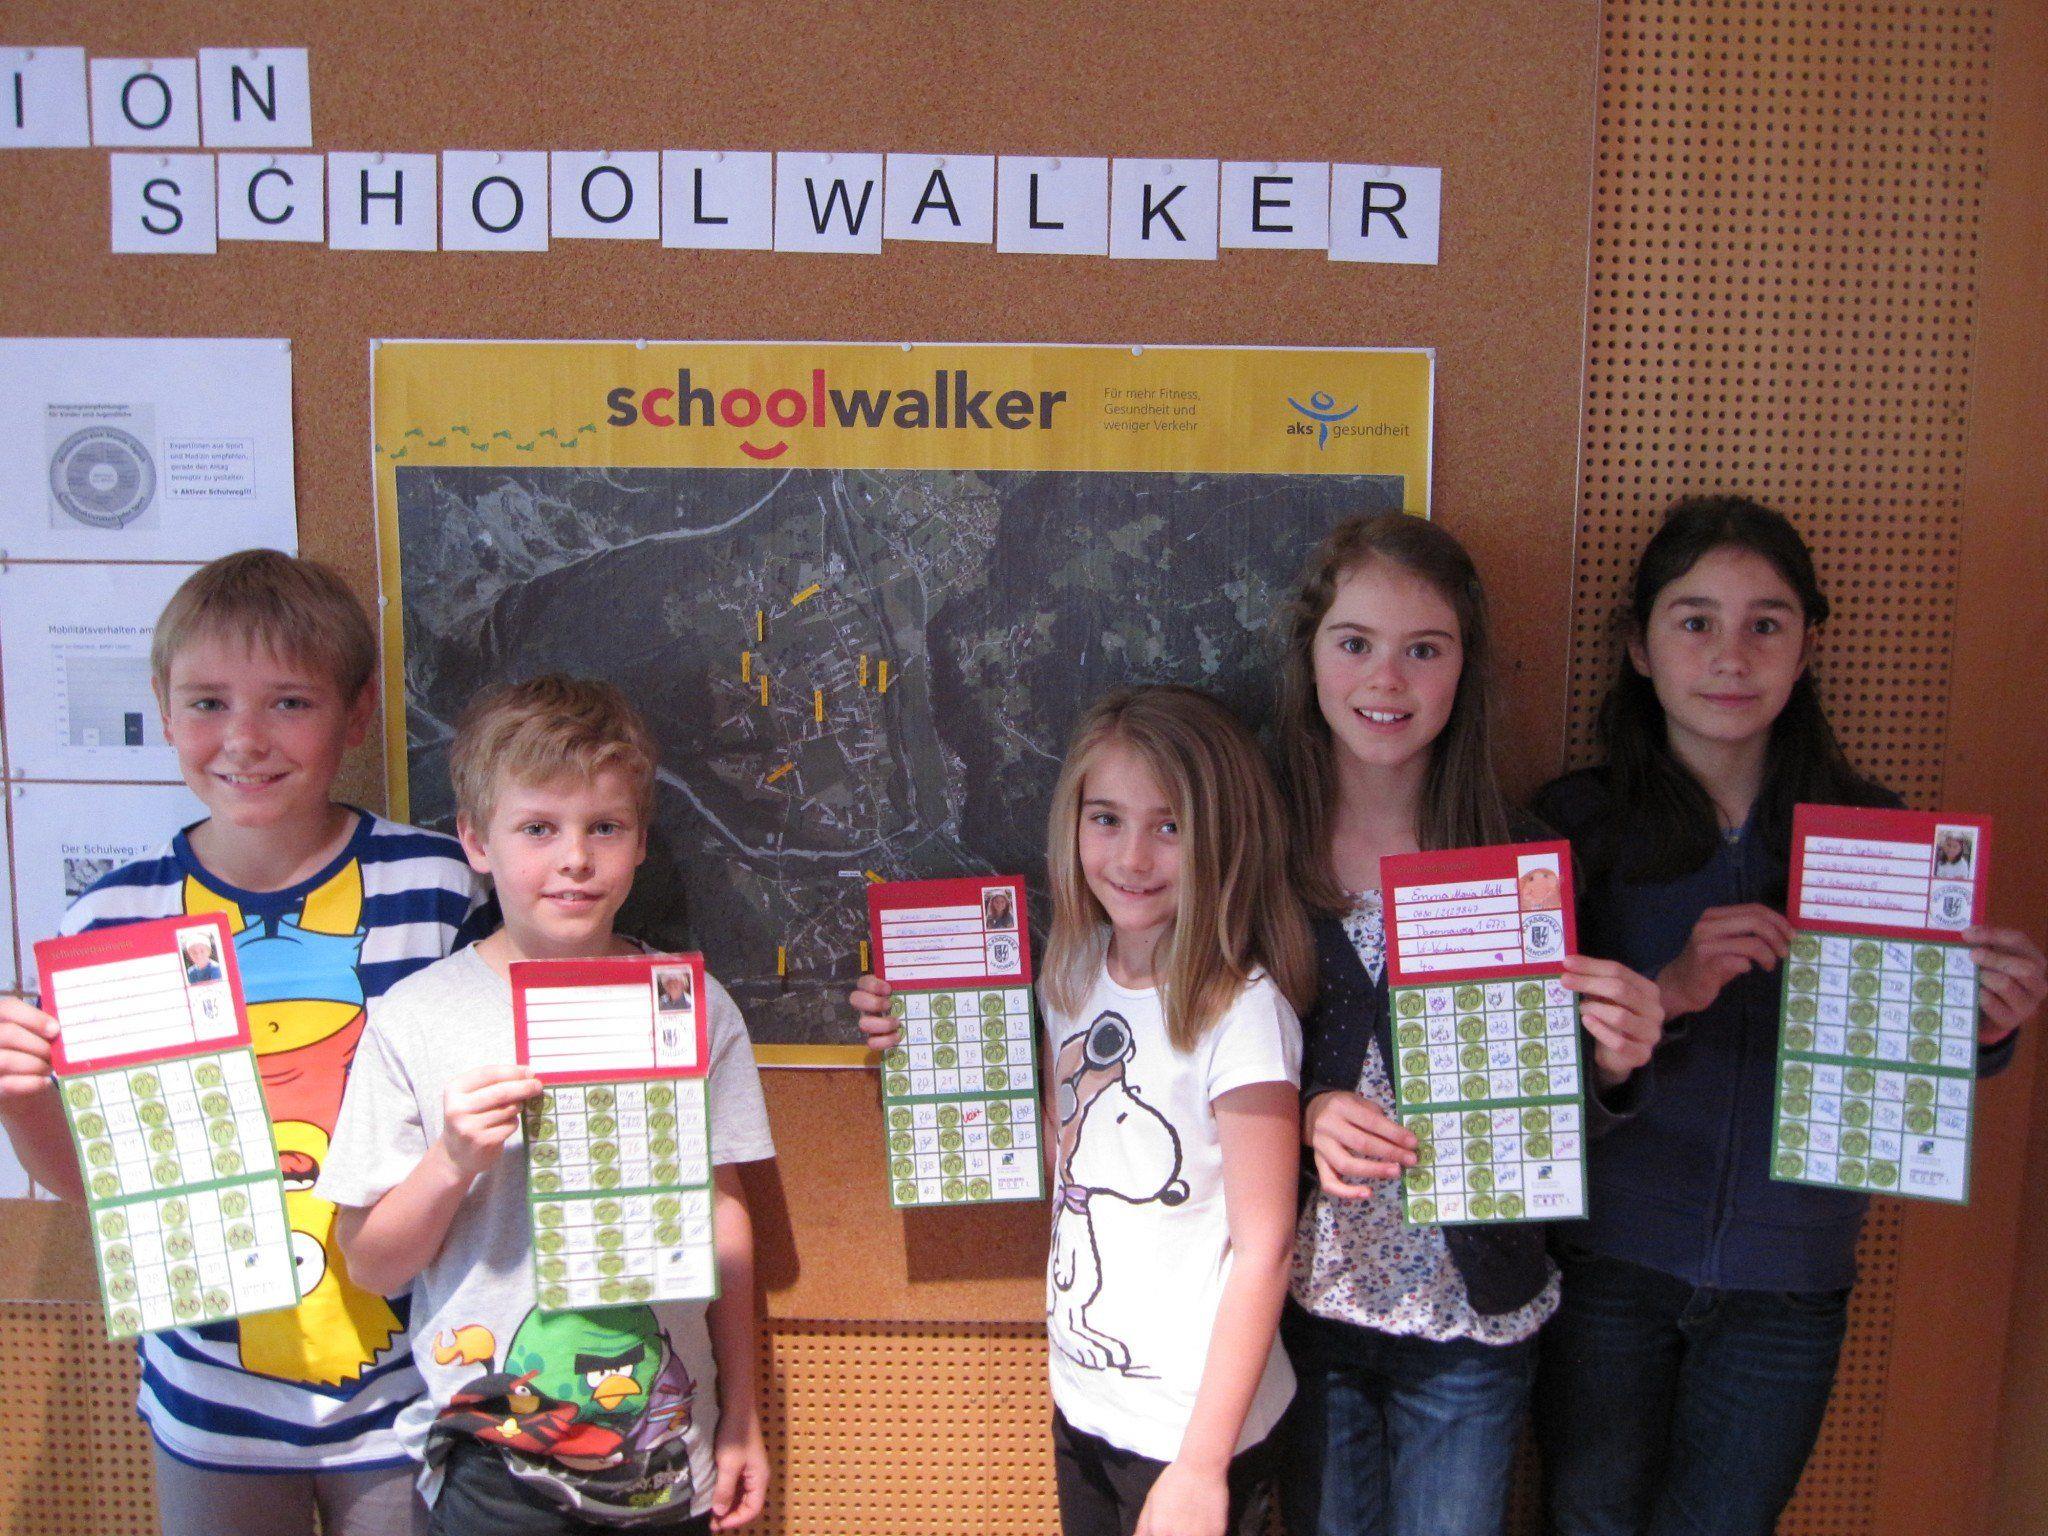 Hatten viel Spaß beim sammeln der schoolwalker-Sticker: Die Kinder der Volksschule Vandans